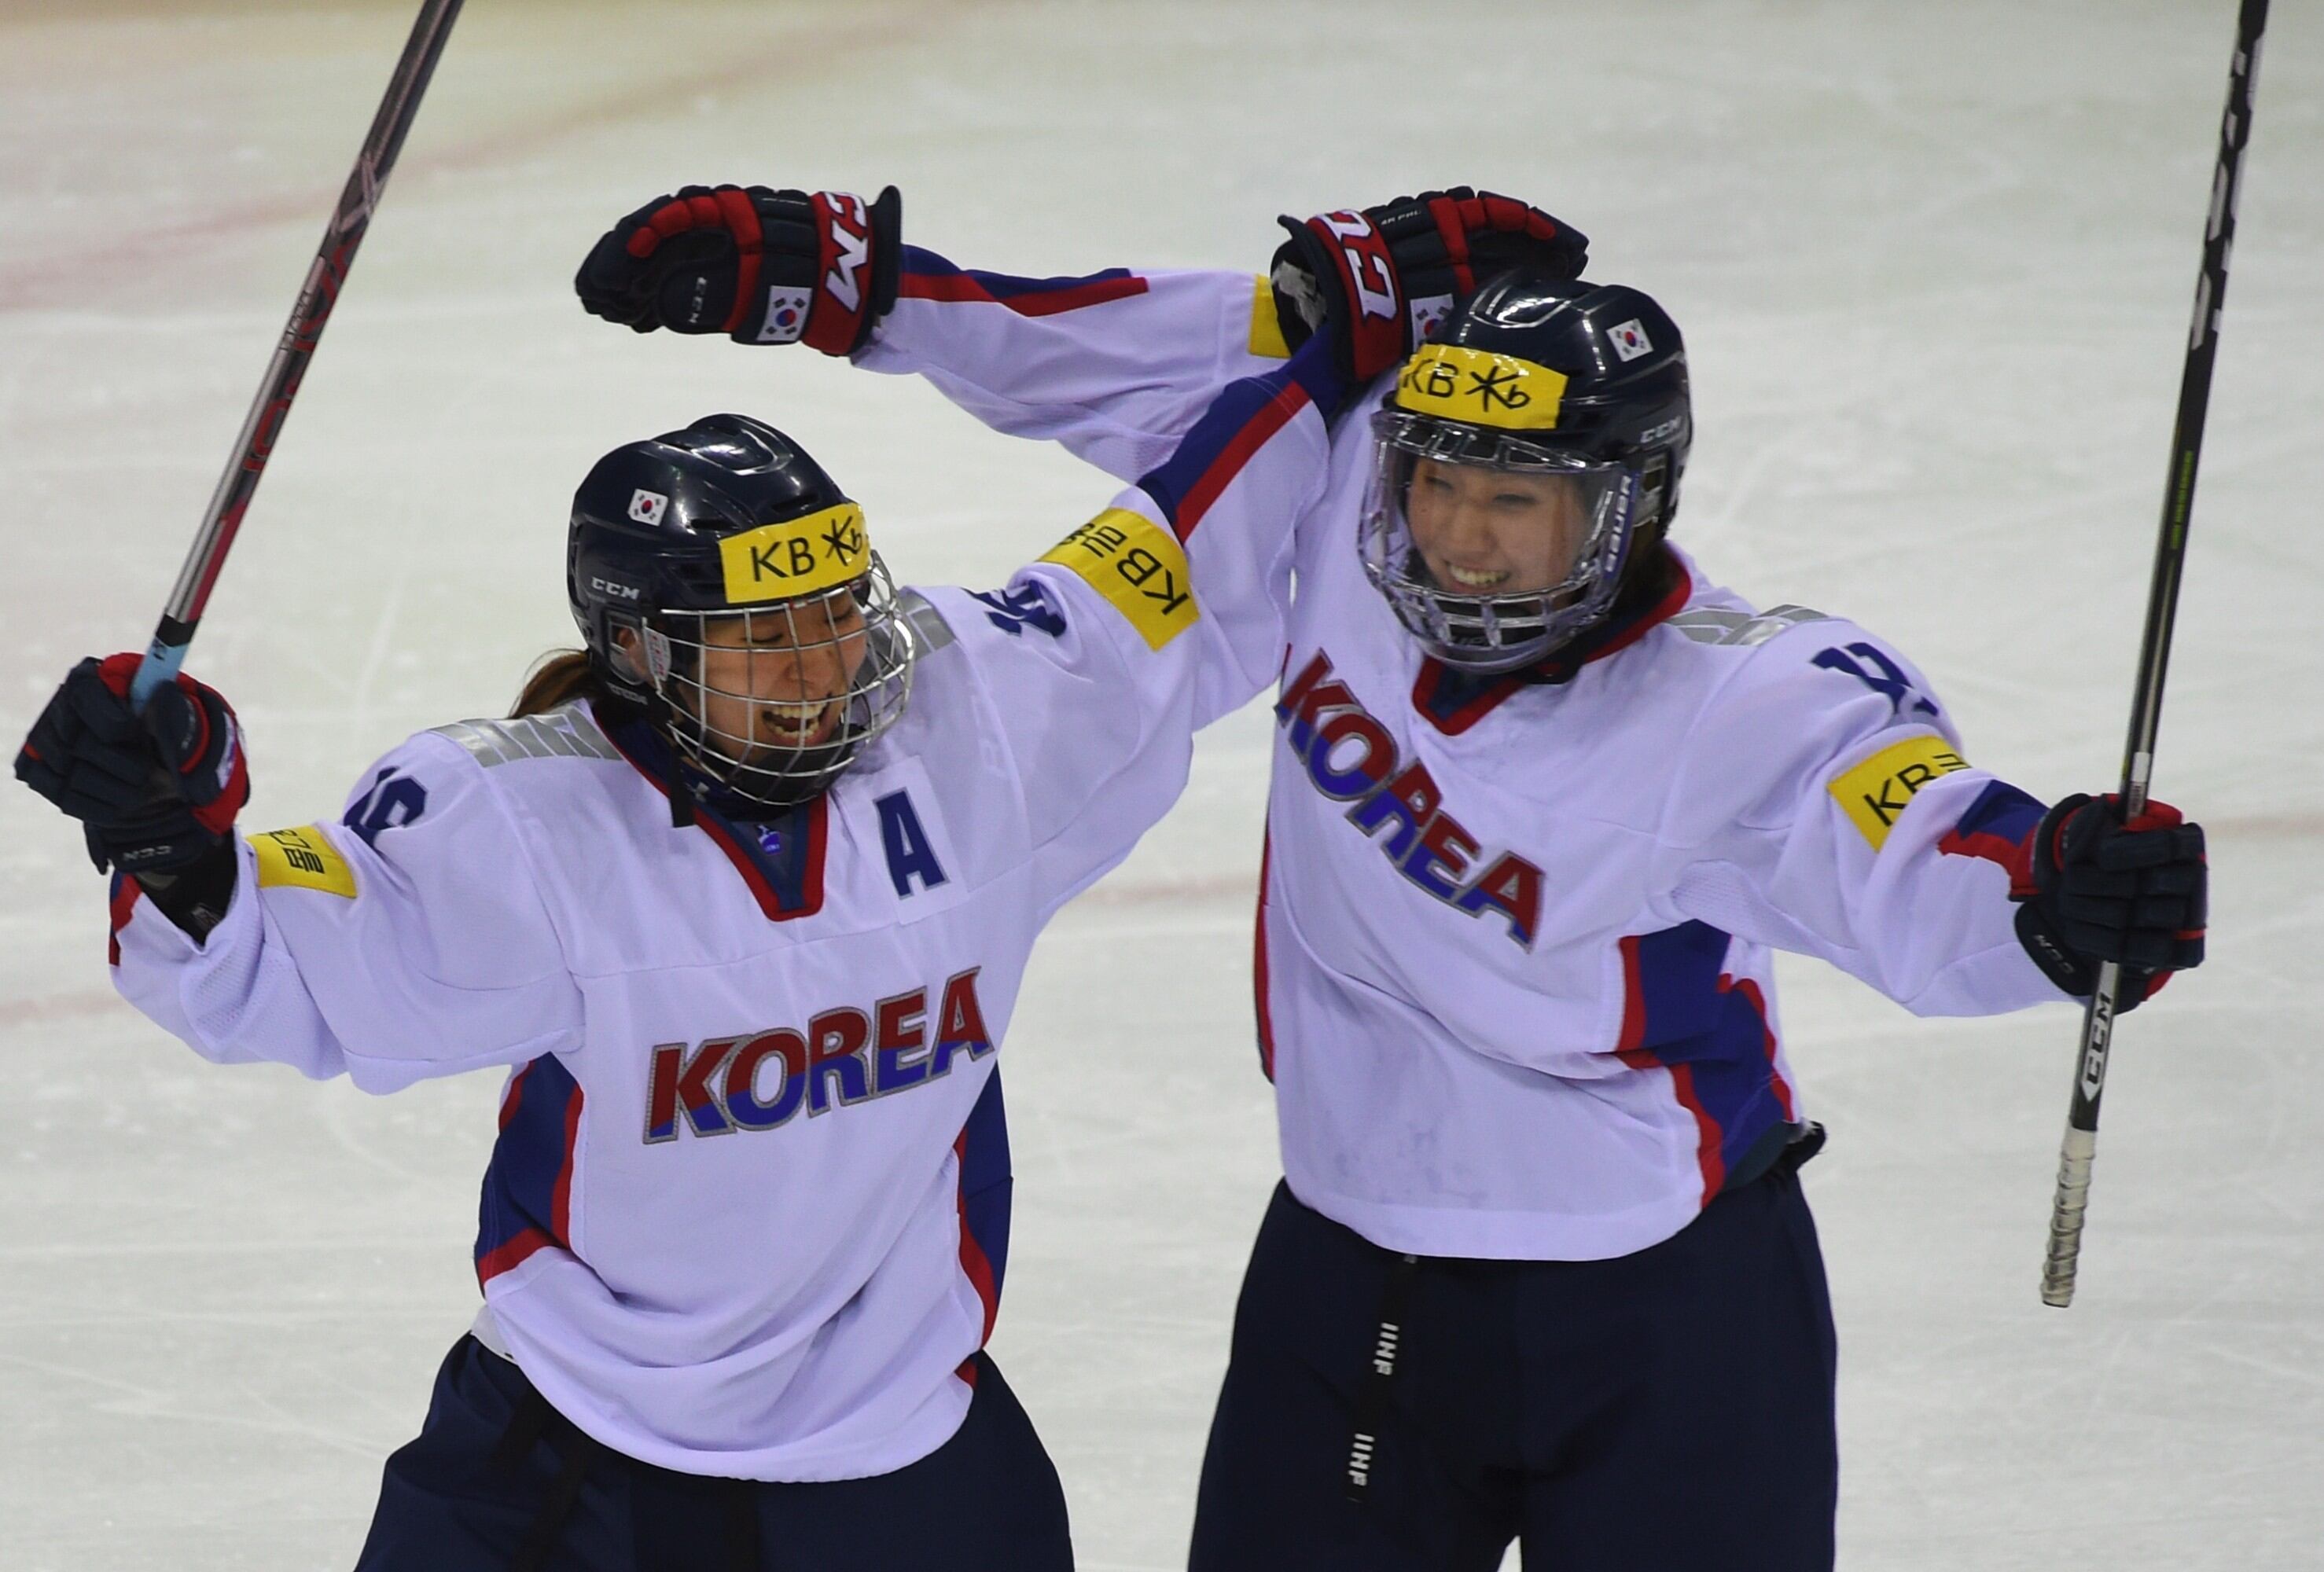 El deporte está por logra lo impensado. Todo indica que las selecciones de hockey de Corea del Norte y Corea del Sur desfilarán juntas en la inauguración de los Juegos Olímpicos de Pyeongchang.